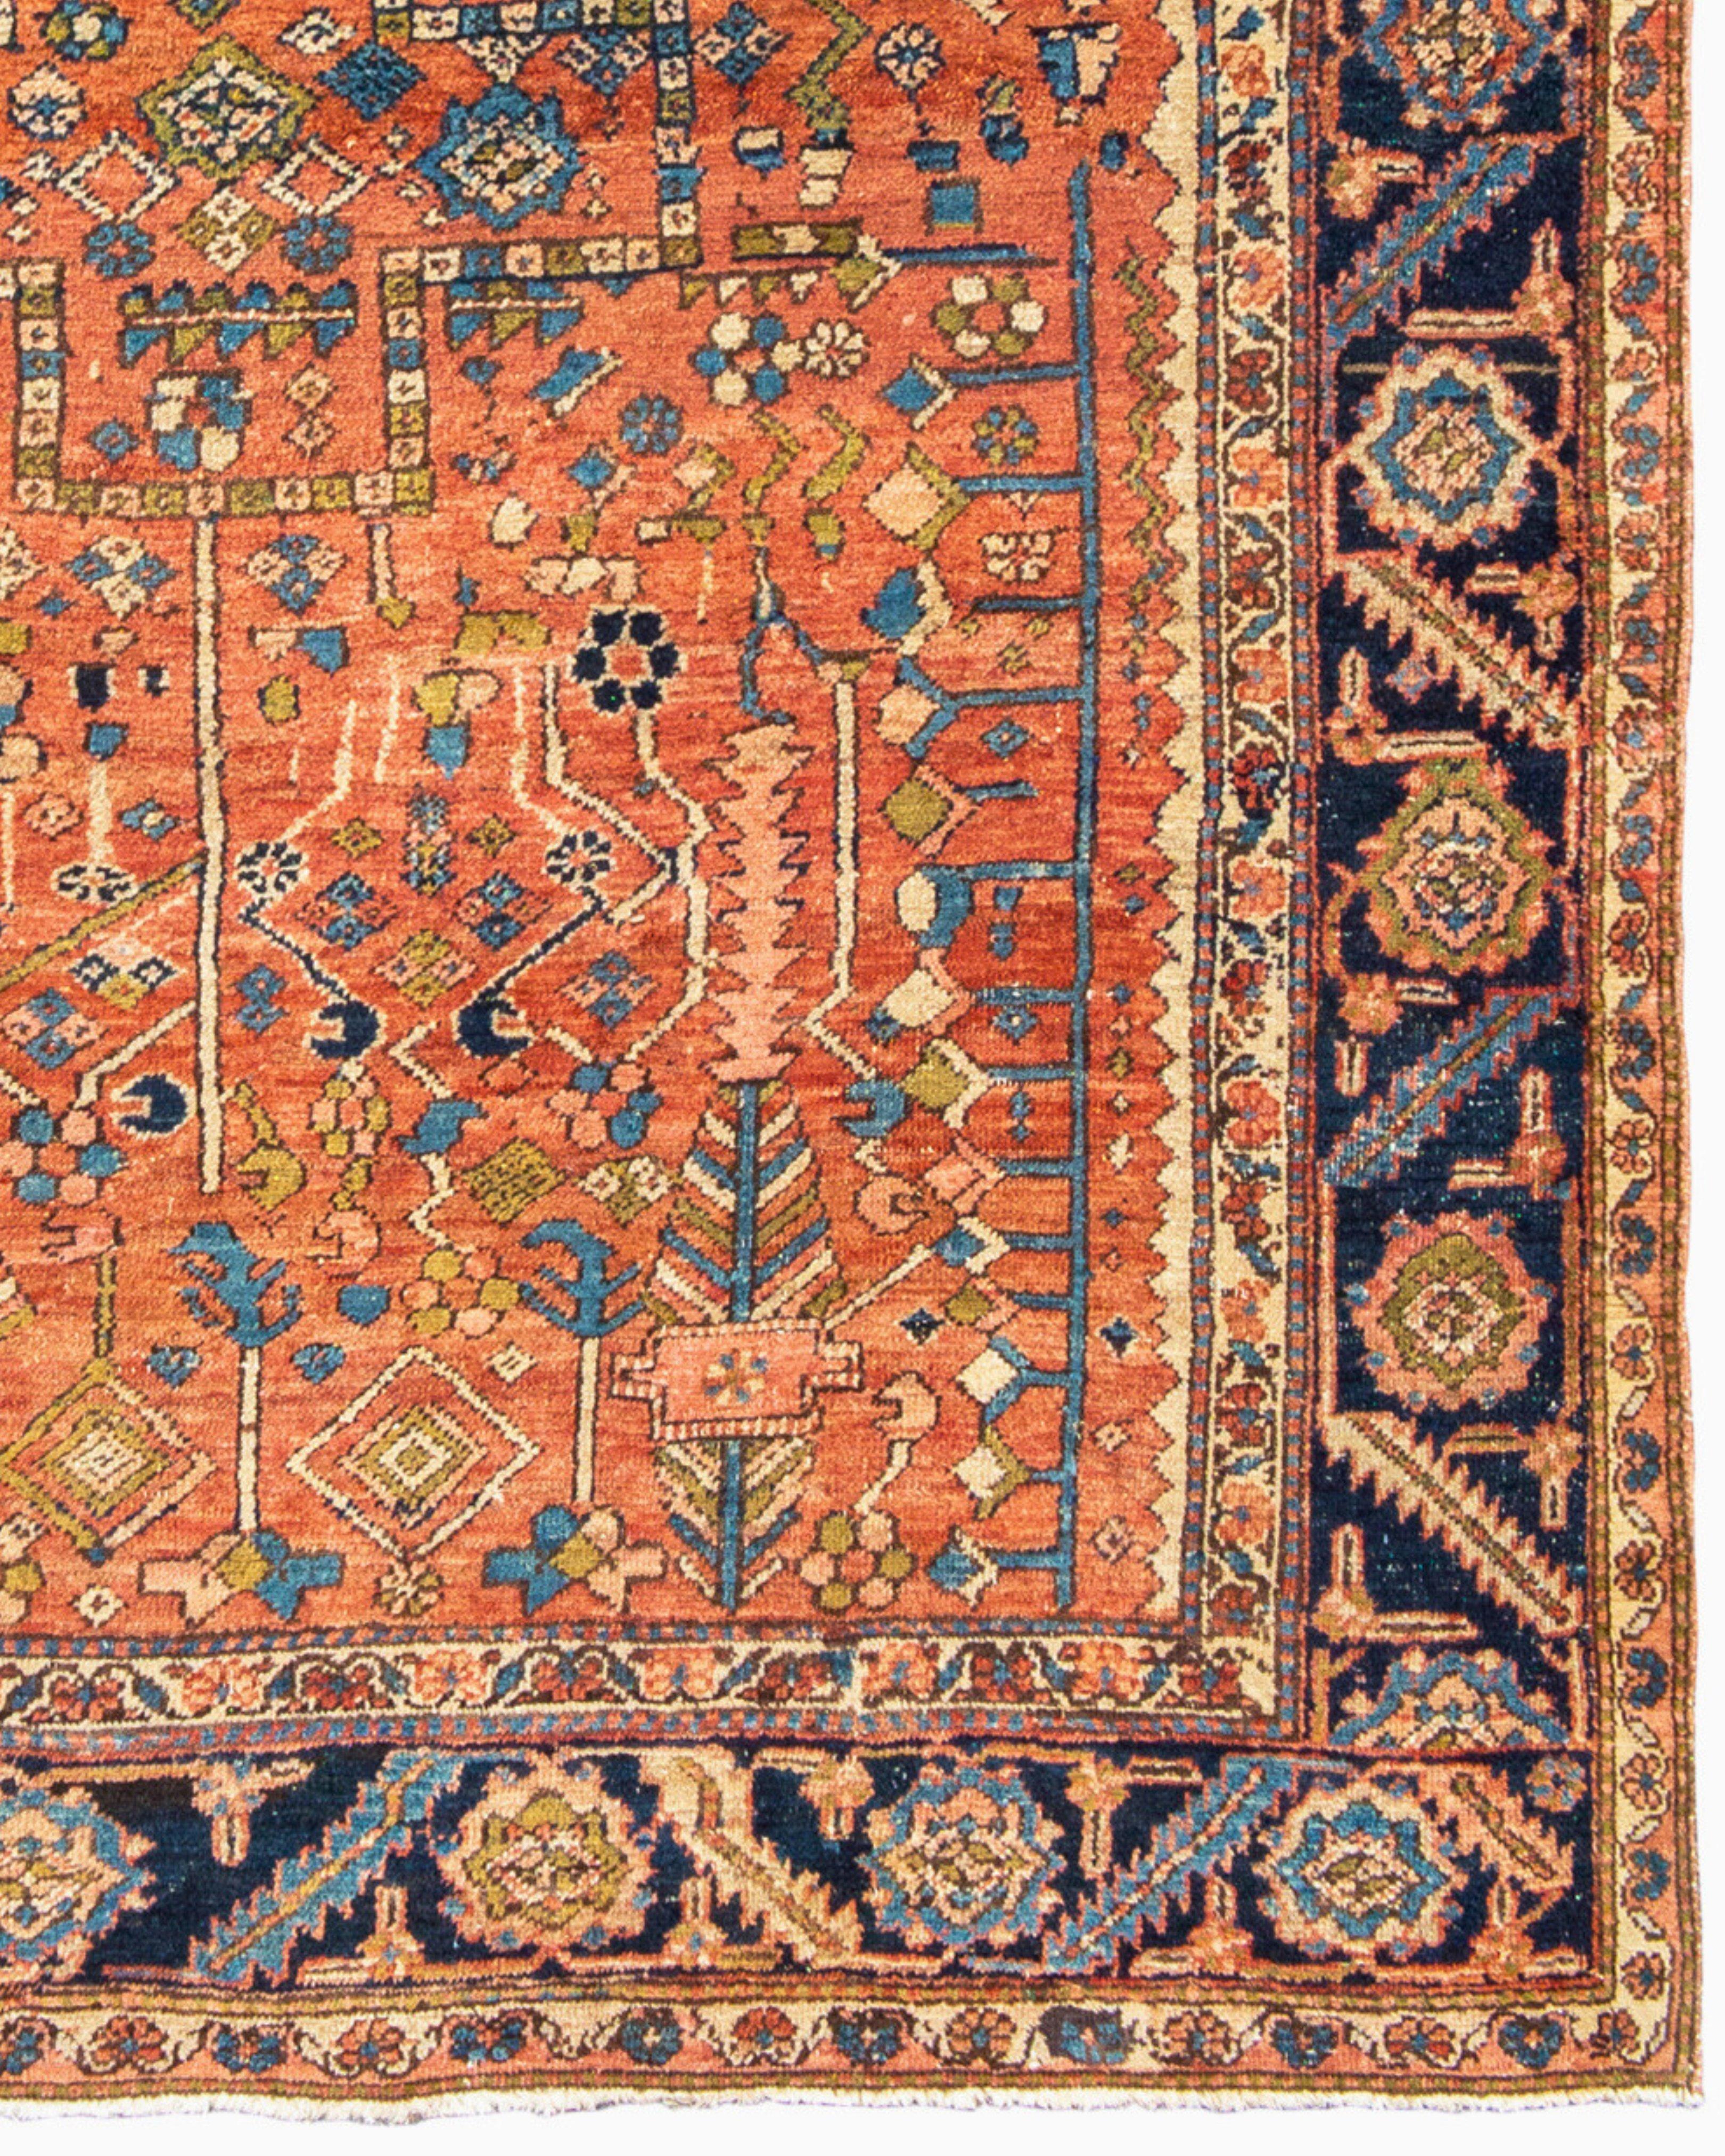 19th Century Antique Persian Bakhshaish Carpet, c. 1900 For Sale